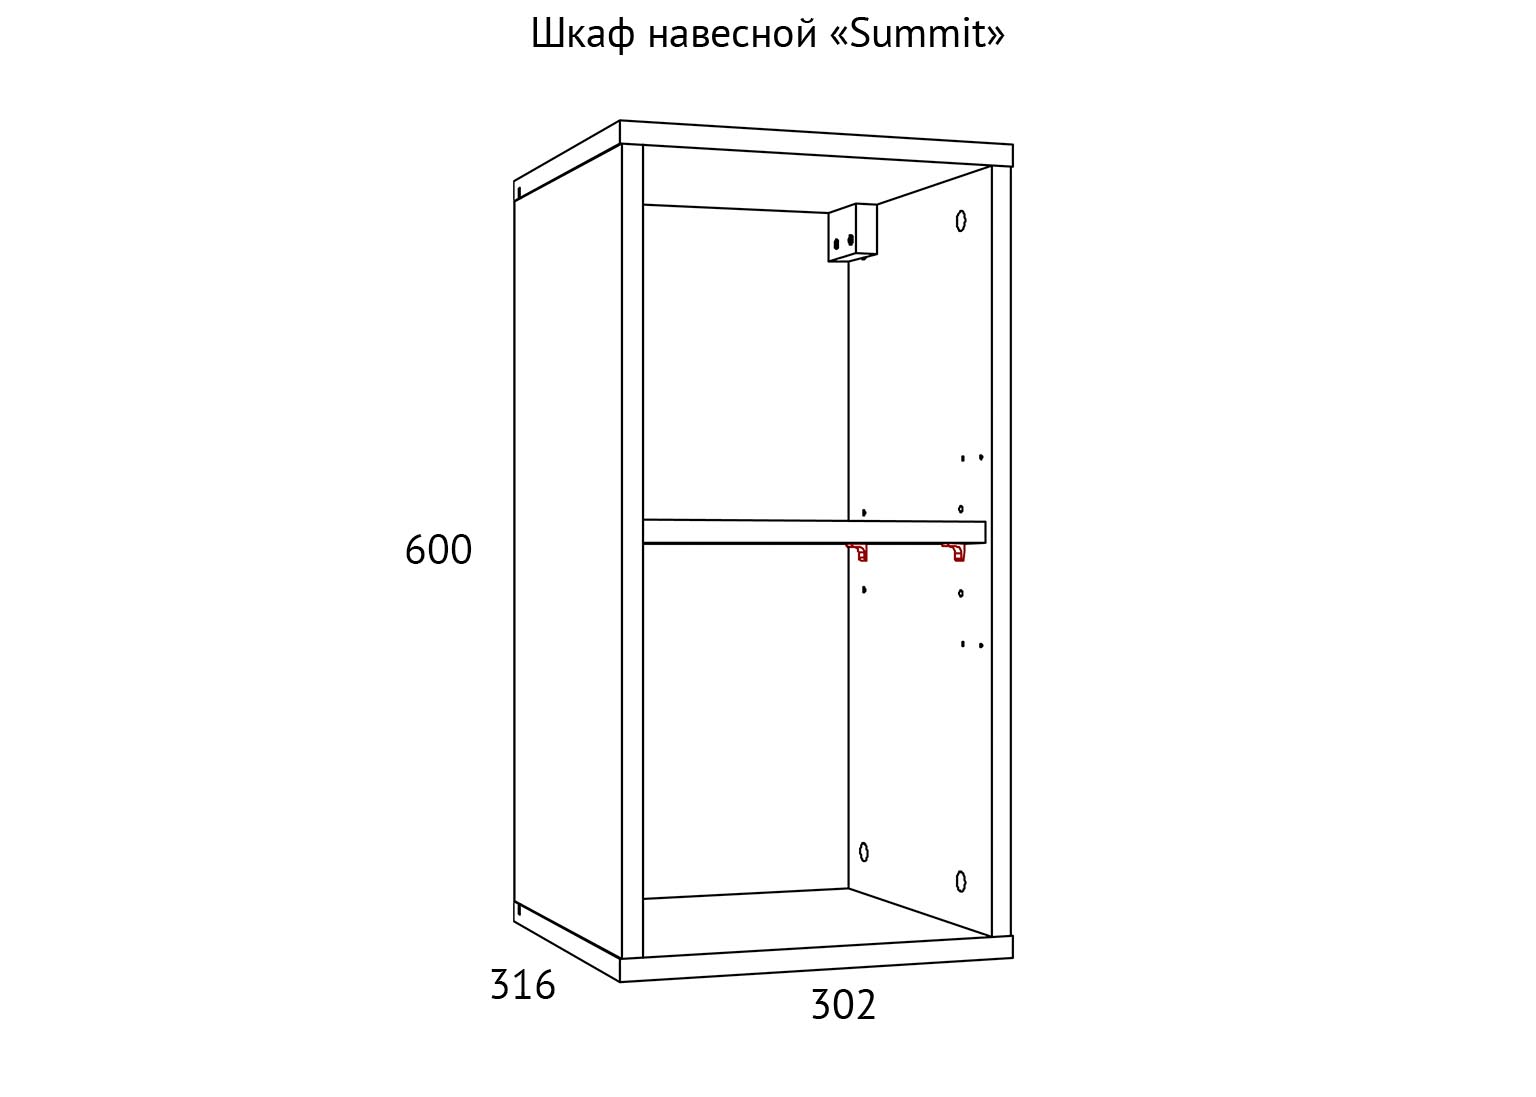 НМ 014.53-02 Шкаф навесной Summit схема Мебель Краснодар